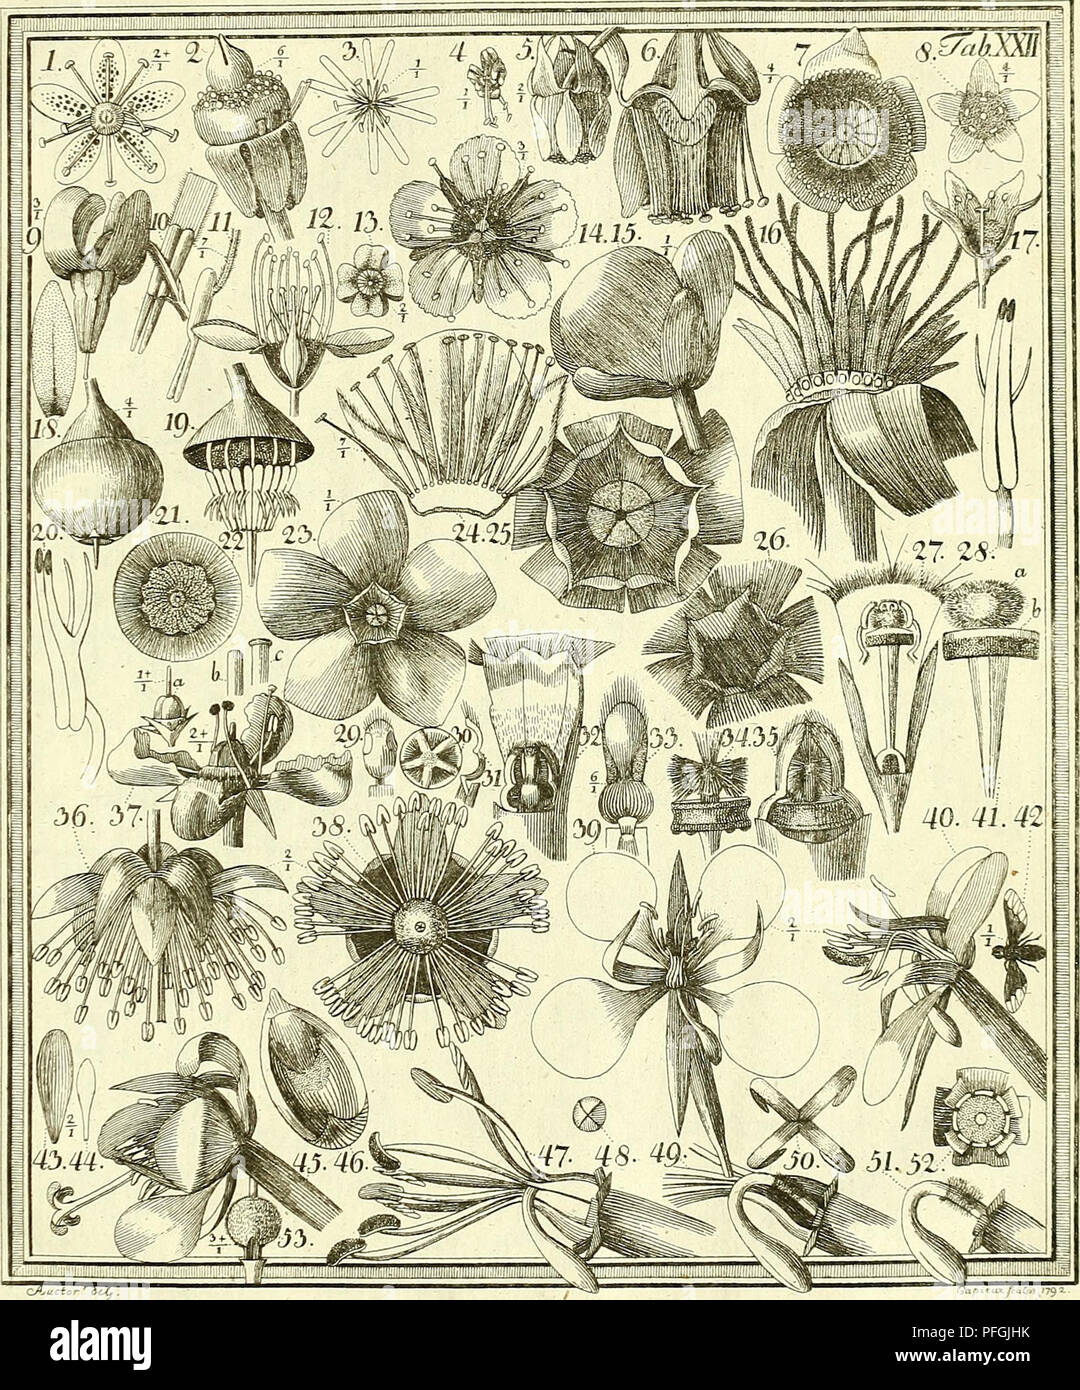 . Das entdeckte Geheimniss der Natur im Bau und in der Befruchtung der Blumen. Botanique ; fleurs ; fertilisation des plantes. . Veuillez noter que ces images sont extraites de la page numérisée des images qui peuvent avoir été retouchées numériquement pour plus de lisibilité - coloration et l'aspect de ces illustrations ne peut pas parfaitement ressembler à l'œuvre originale.. Sprengel, Christian Konrad, 1750-1816 ; Capieux, Johann Stephan, 1748-1813, graveur ; Jäck, C. (CARL), graveur, Arndt, Wilhelm, 1750-1813, graveur ; Wohlgemuth, A. , engraver ; Lehmann, C. A. , fl. 1803, l'ancien propriétaire. DSI ; Bibliothèque Burndy, donateur. Le DSI. Berlin Banque D'Images